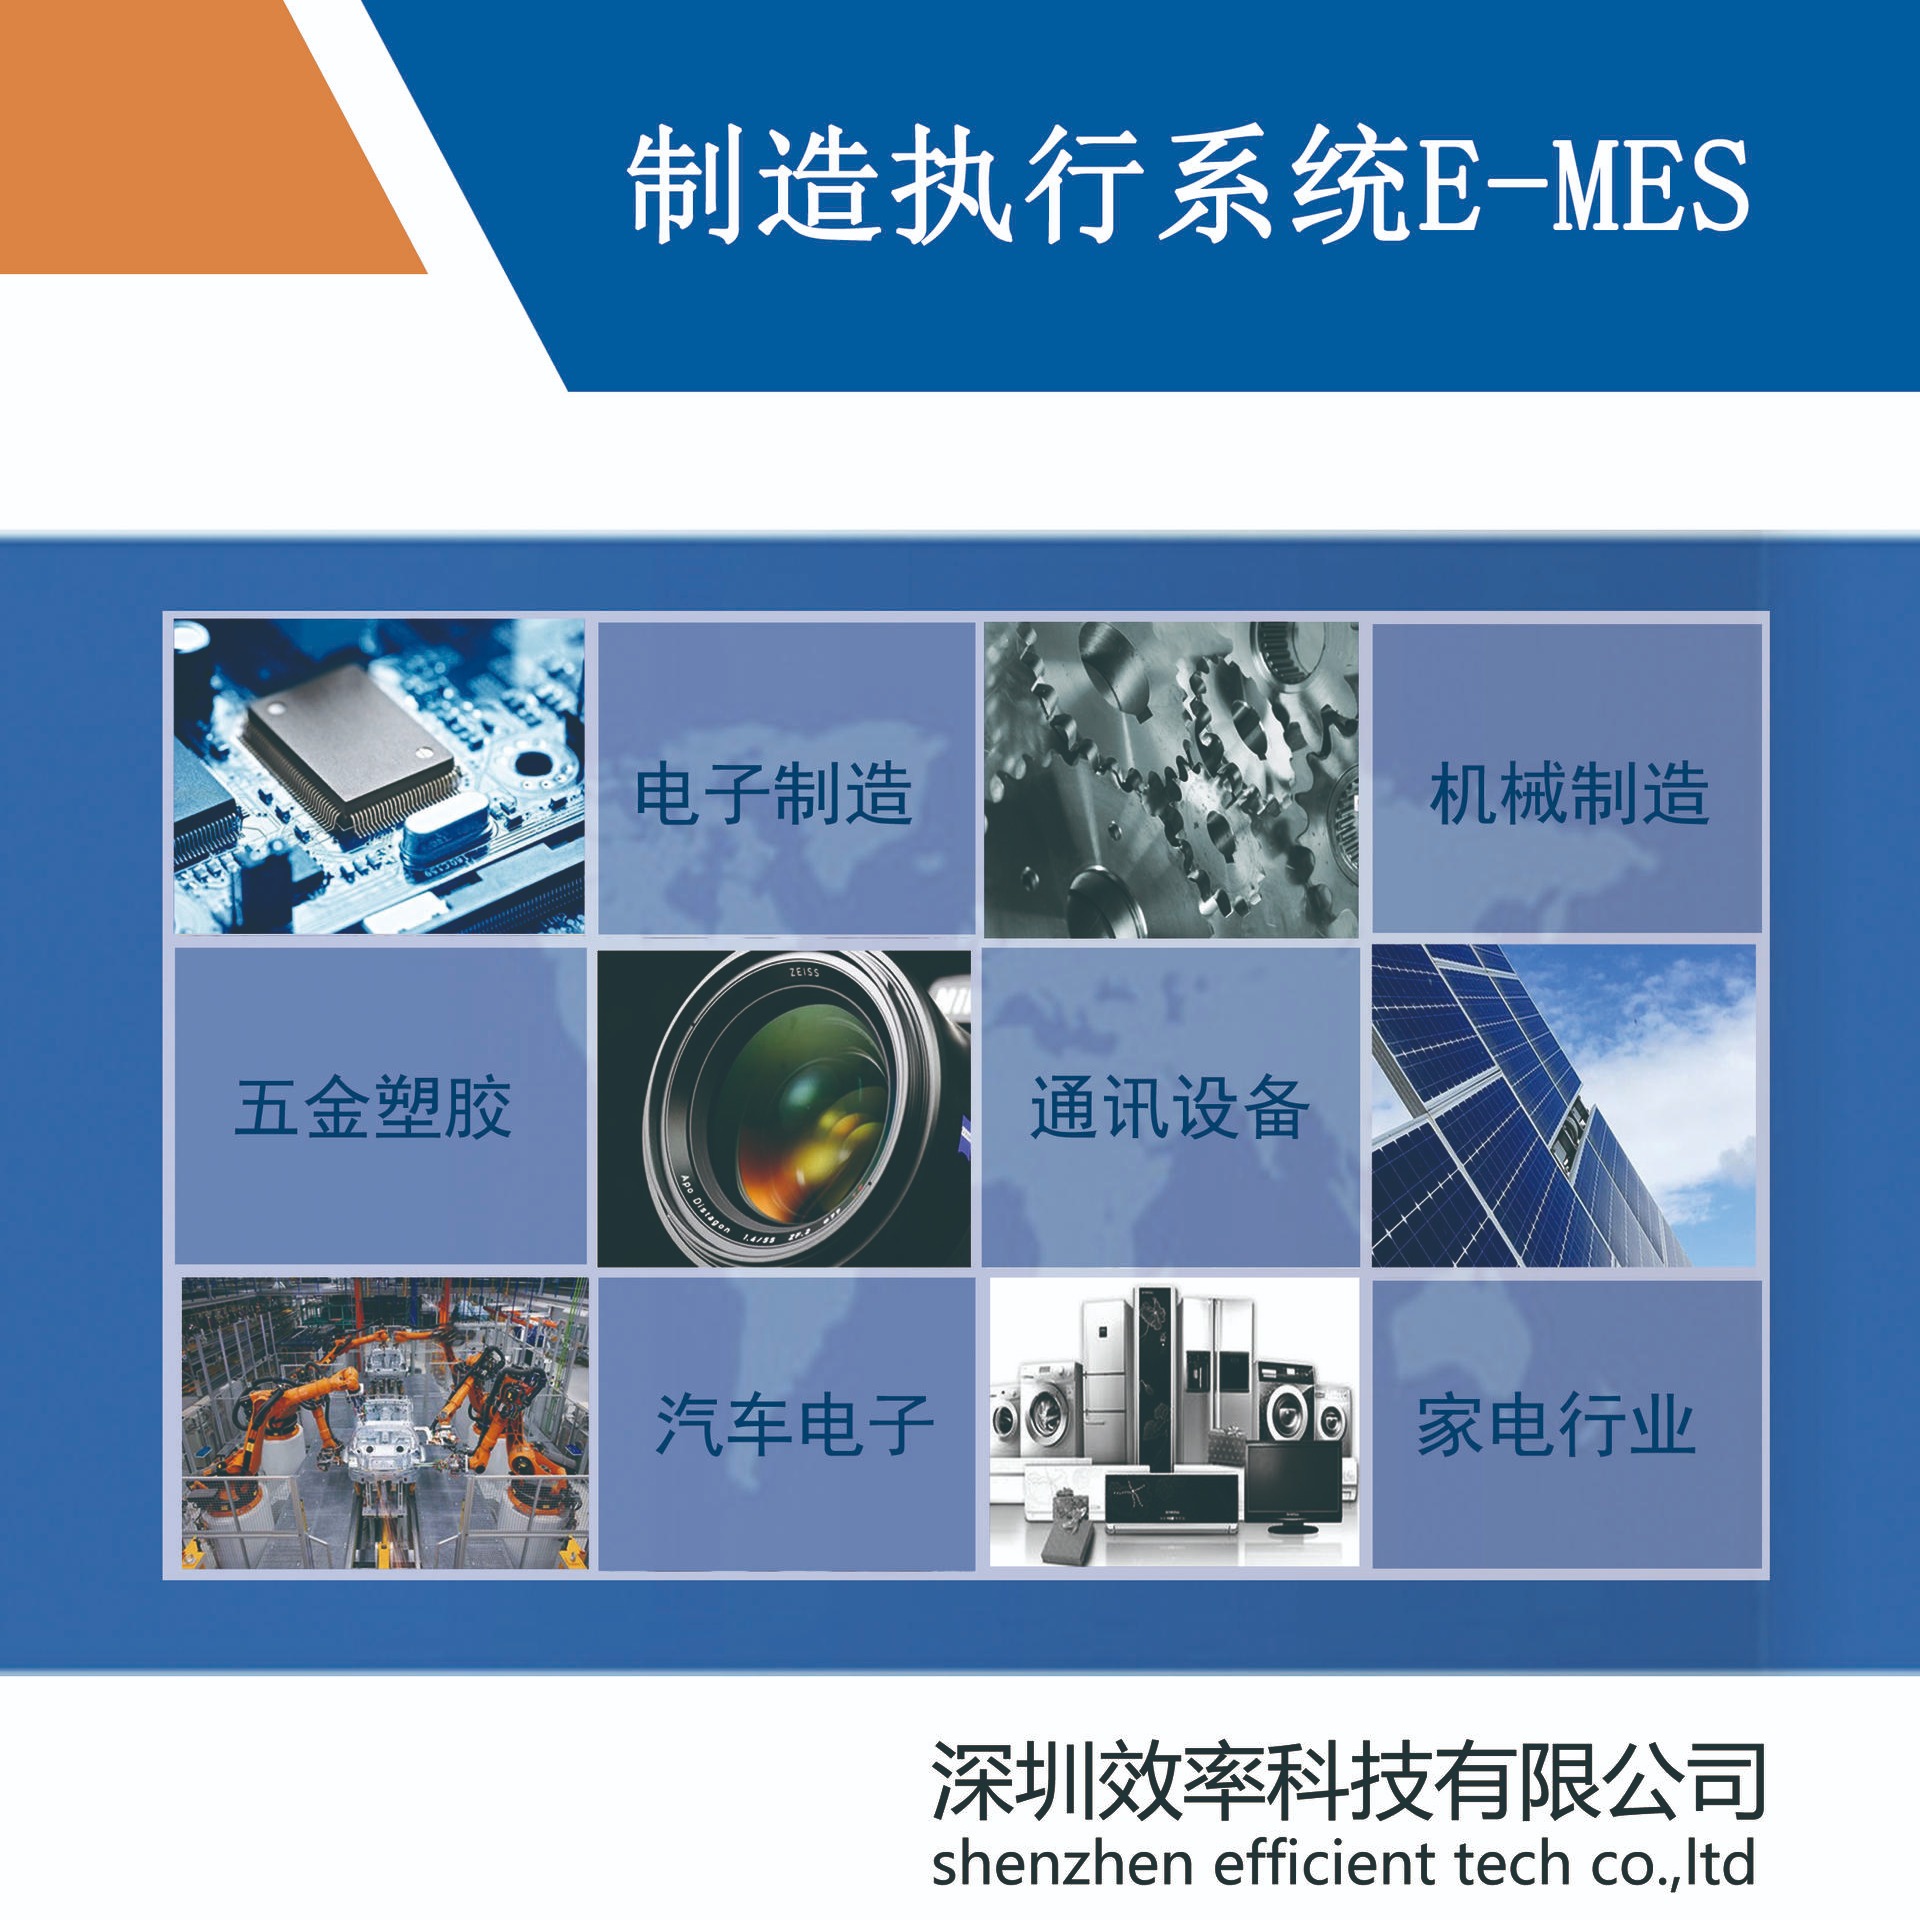 机械装备行业MES解决方案 效率mes系统